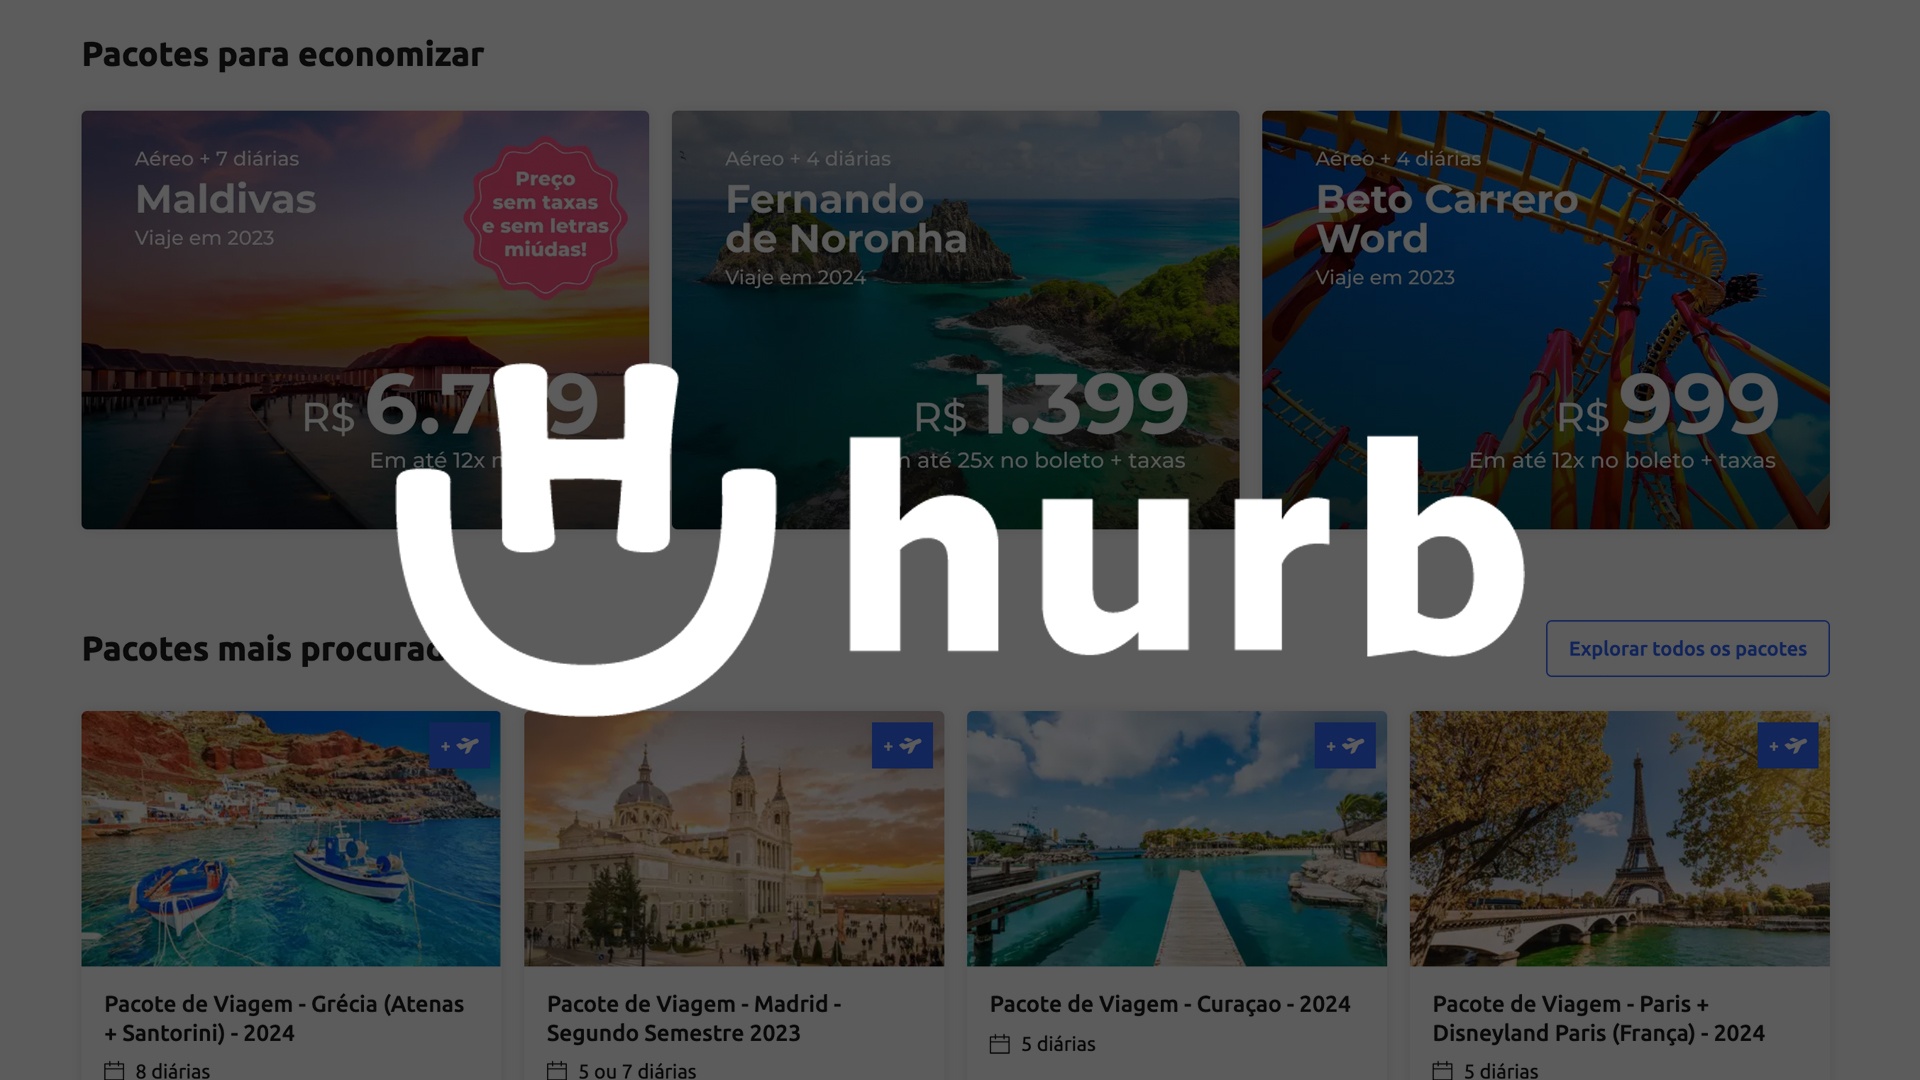 Aproveite as melhores ofertas em pacotes de viagens: baixe o aplicativo Hurb e economize!